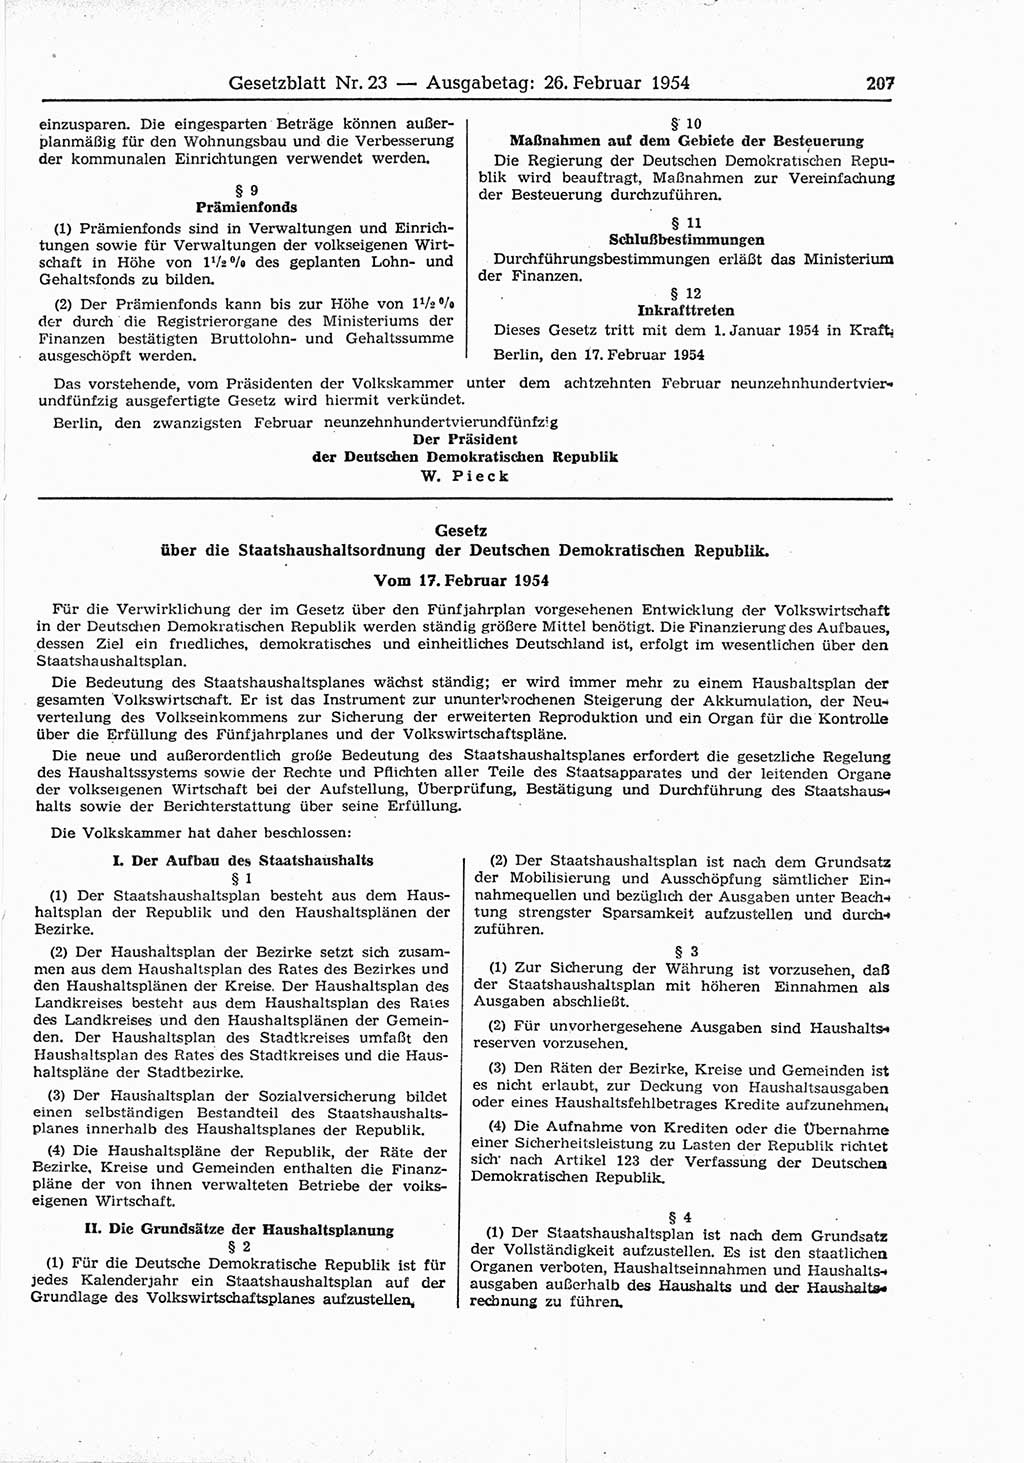 Gesetzblatt (GBl.) der Deutschen Demokratischen Republik (DDR) 1954, Seite 207 (GBl. DDR 1954, S. 207)